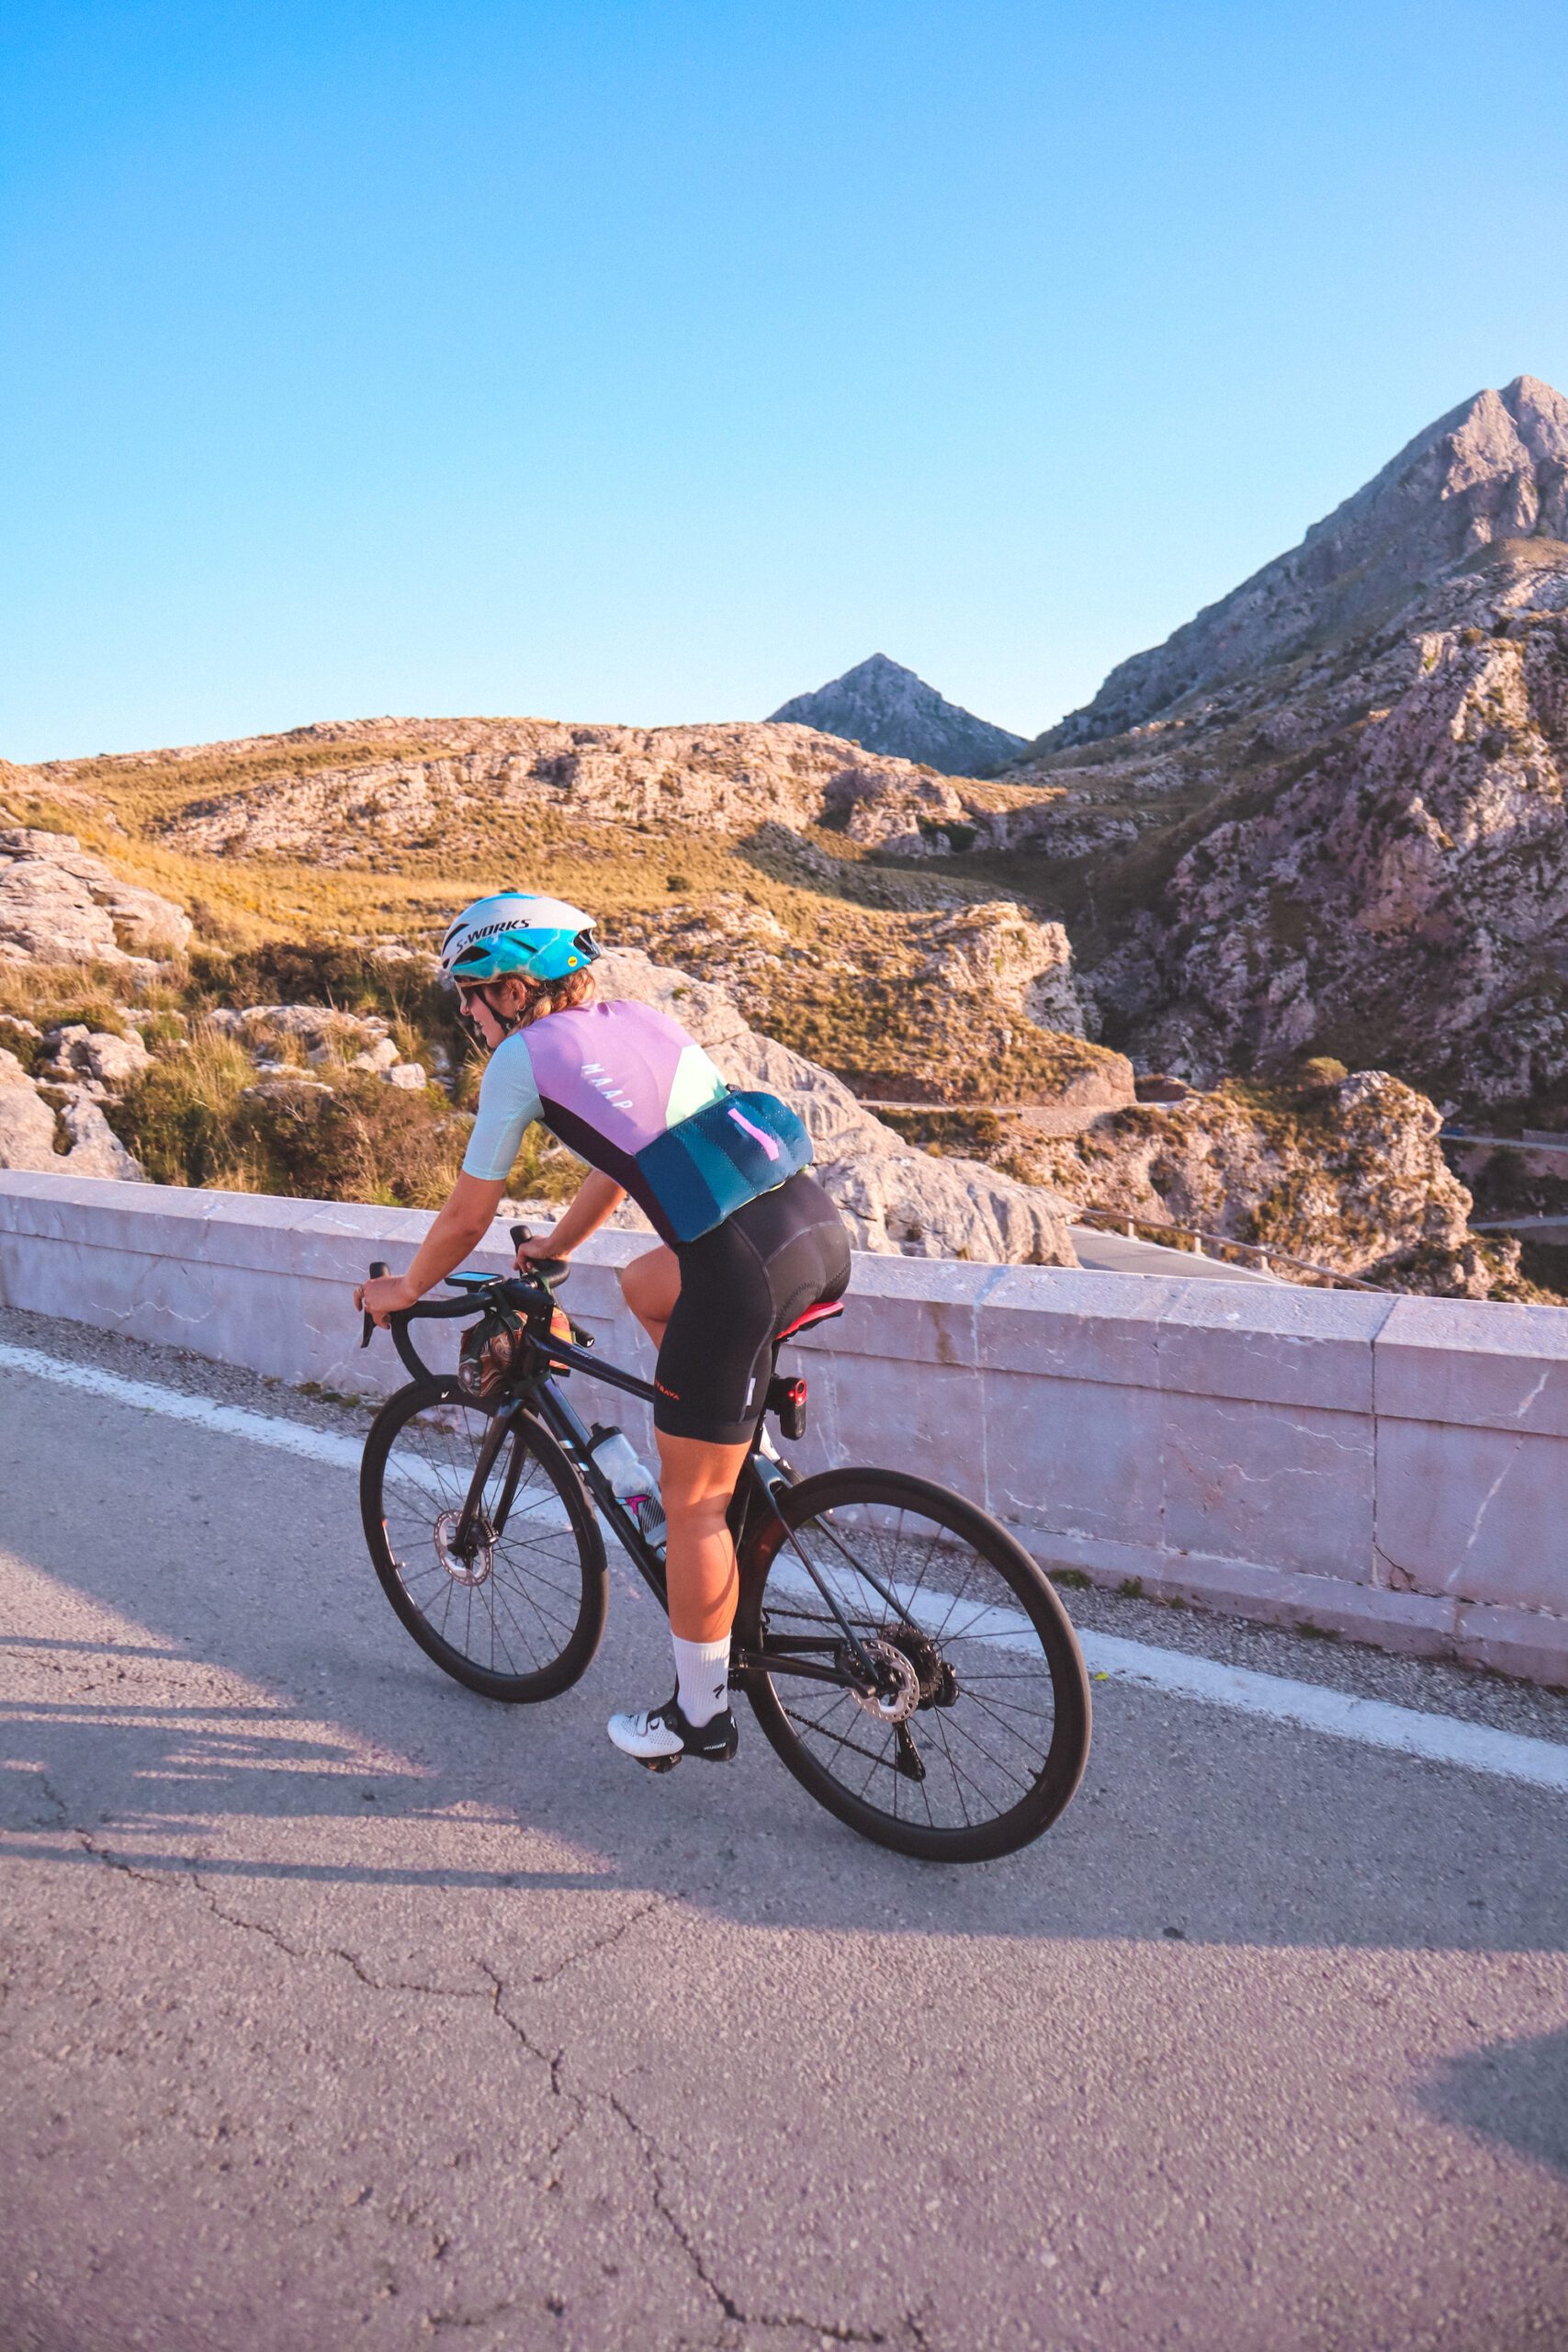 Randonnée / Vélo à Majorque : Mes recommandations d'itinéraire